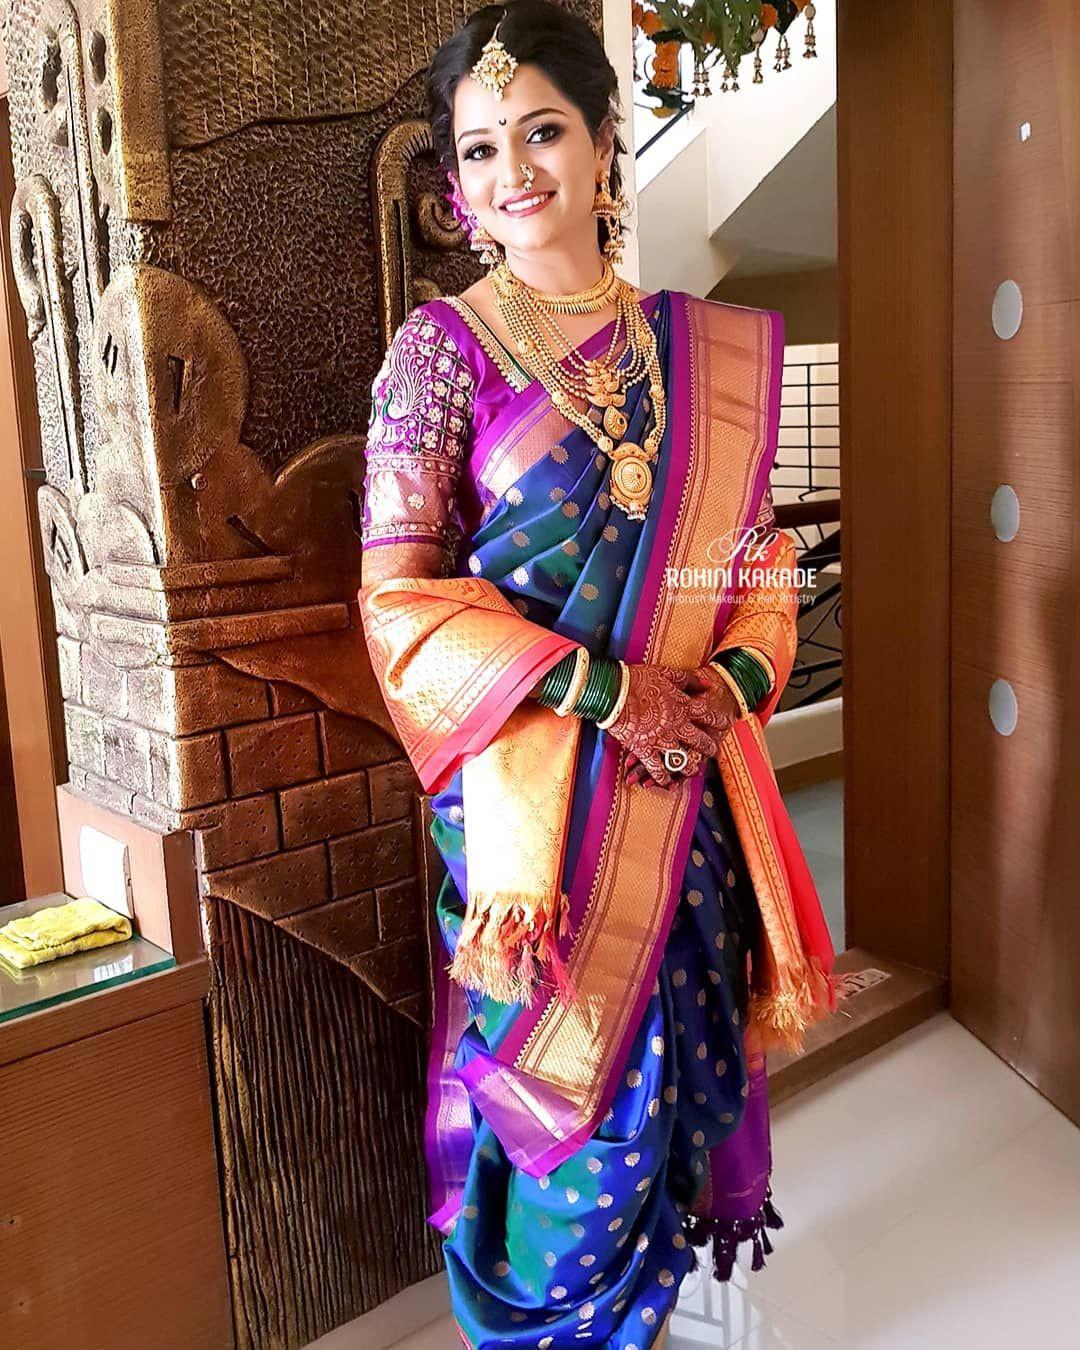 Maharashtrian Bridal Looks That Are Inspiration-Worthy | WedMeGood